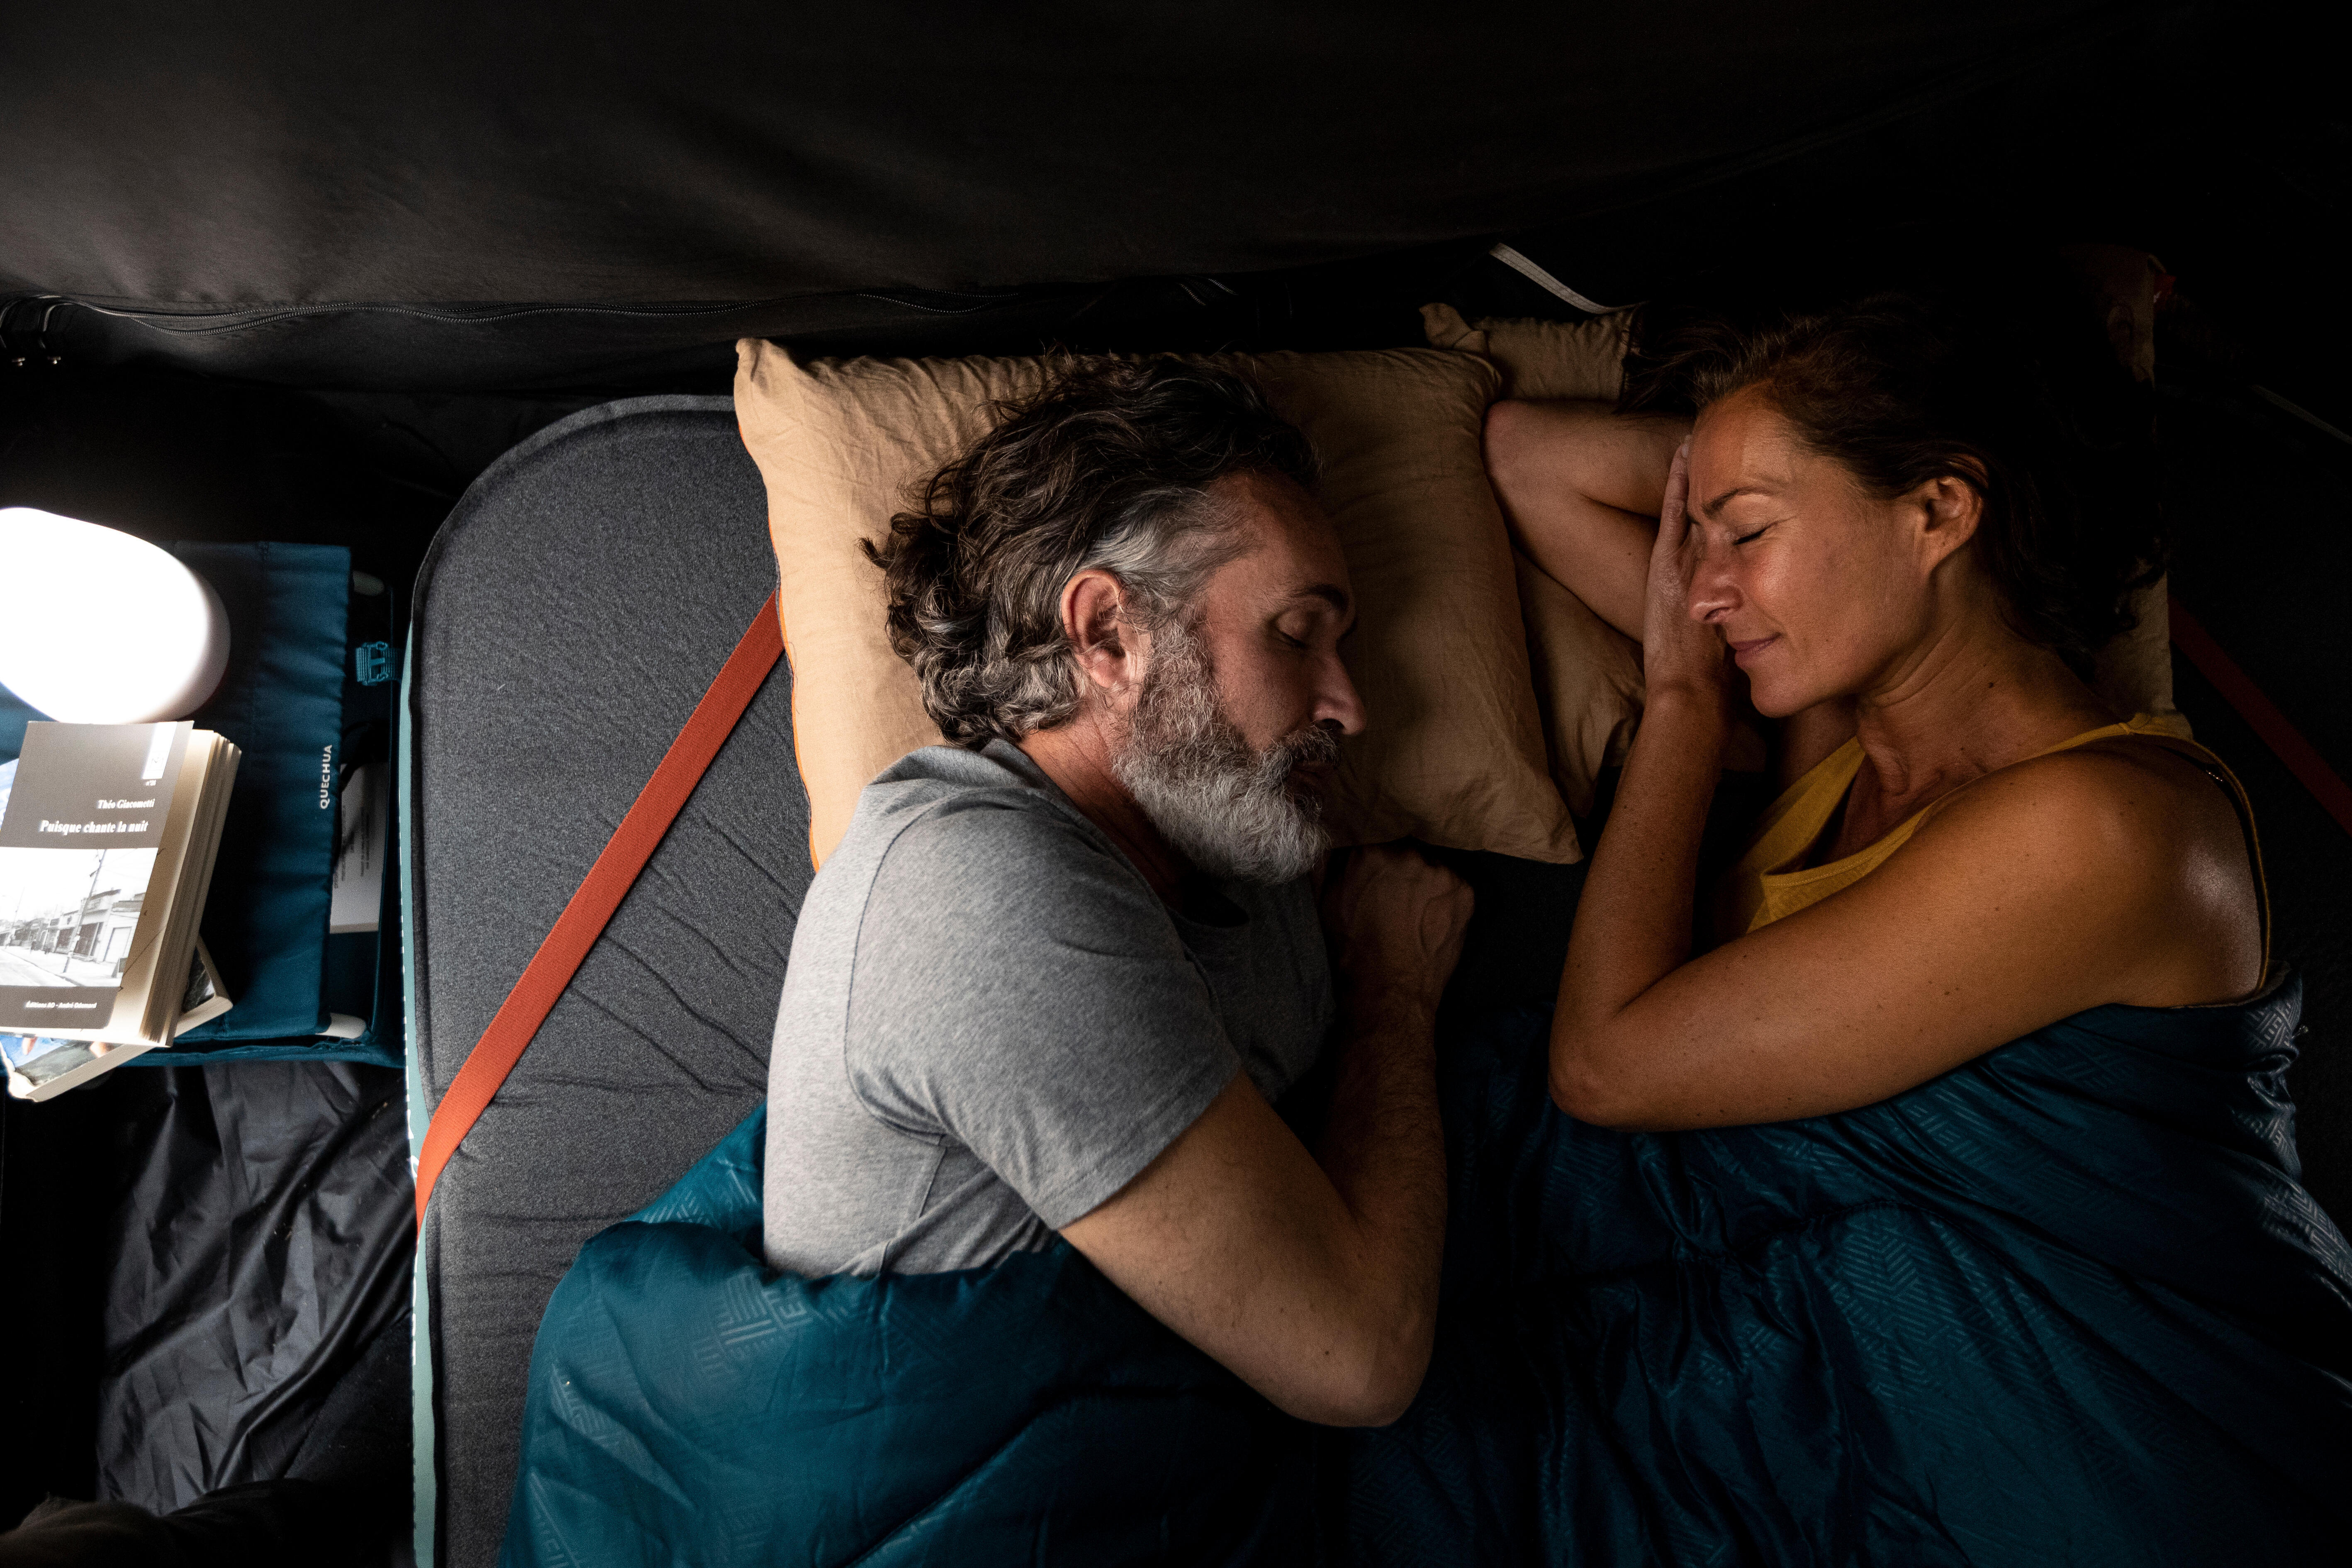 Comment bien dormir sur un matelas gonflable ?